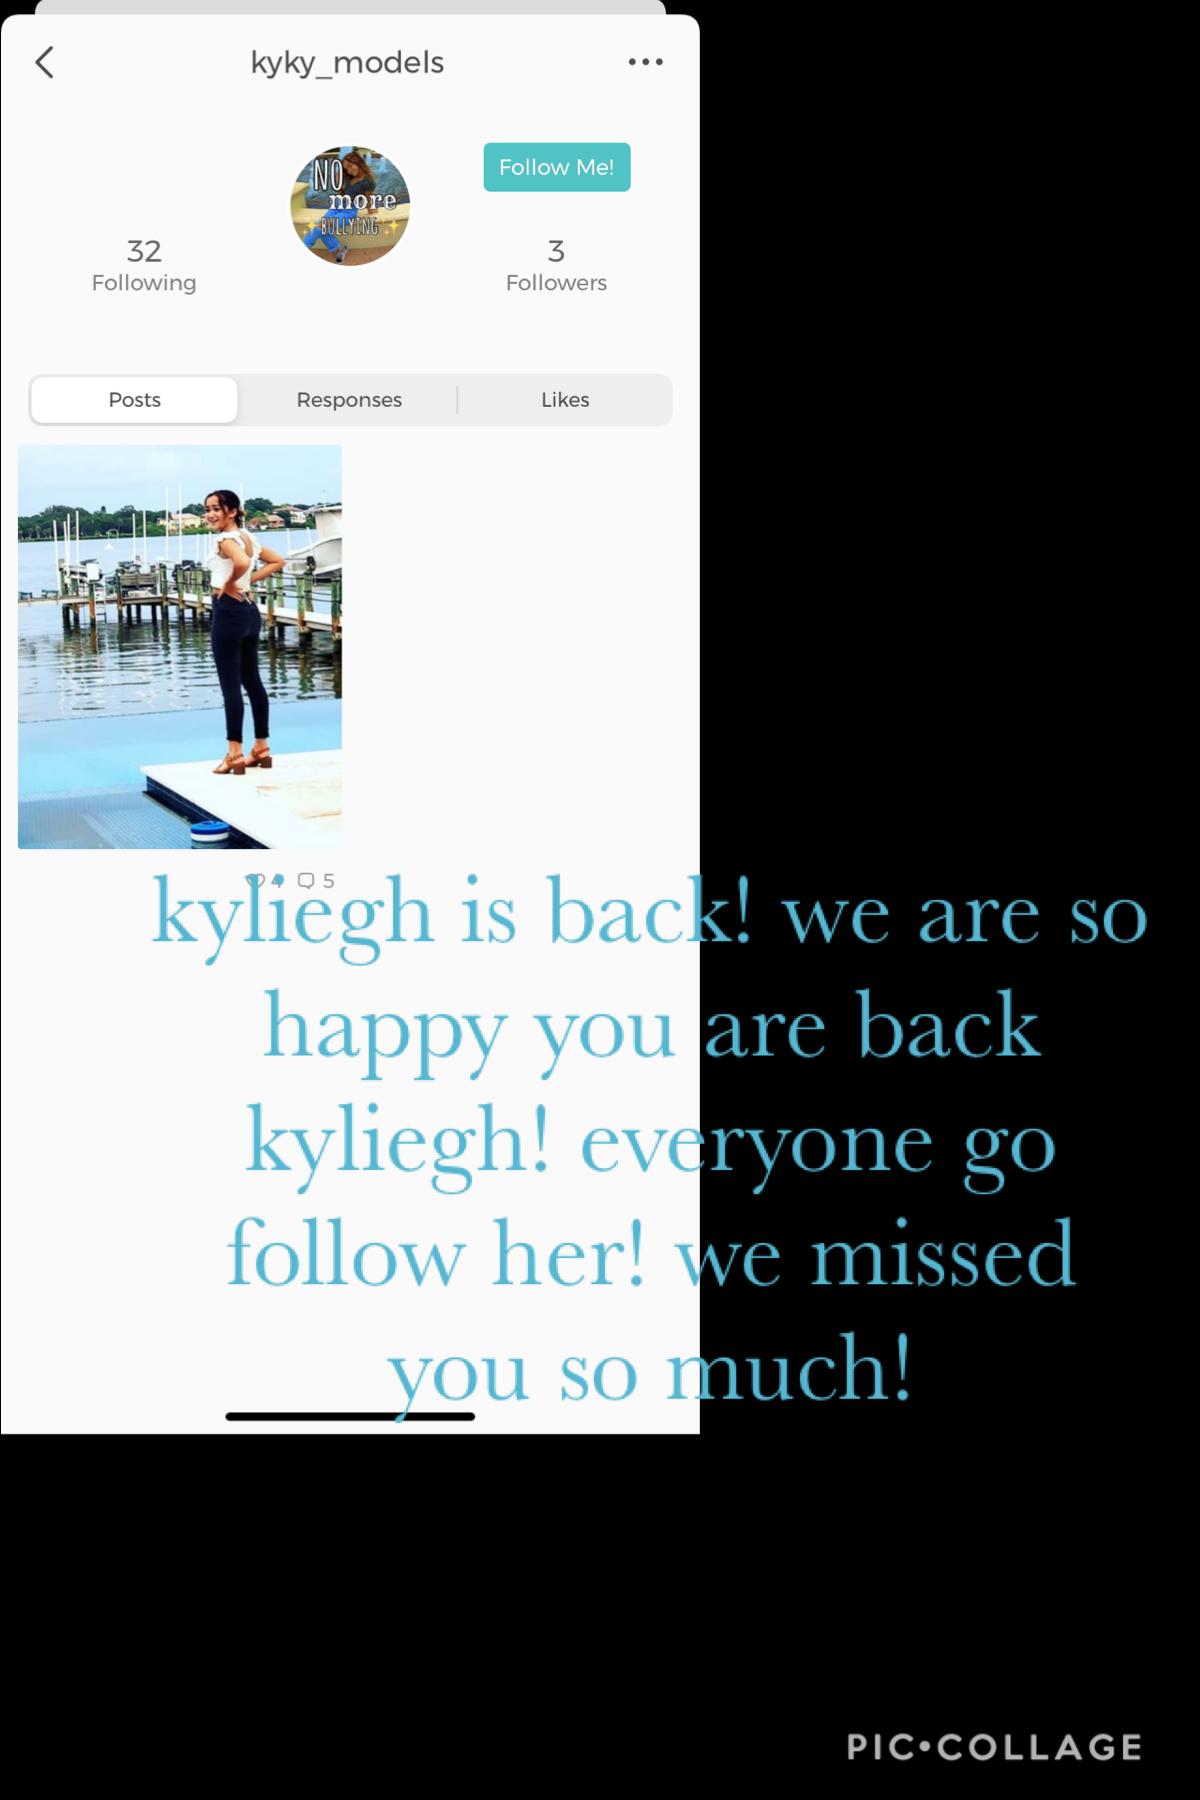 go follow kyliegh! @kyky_models